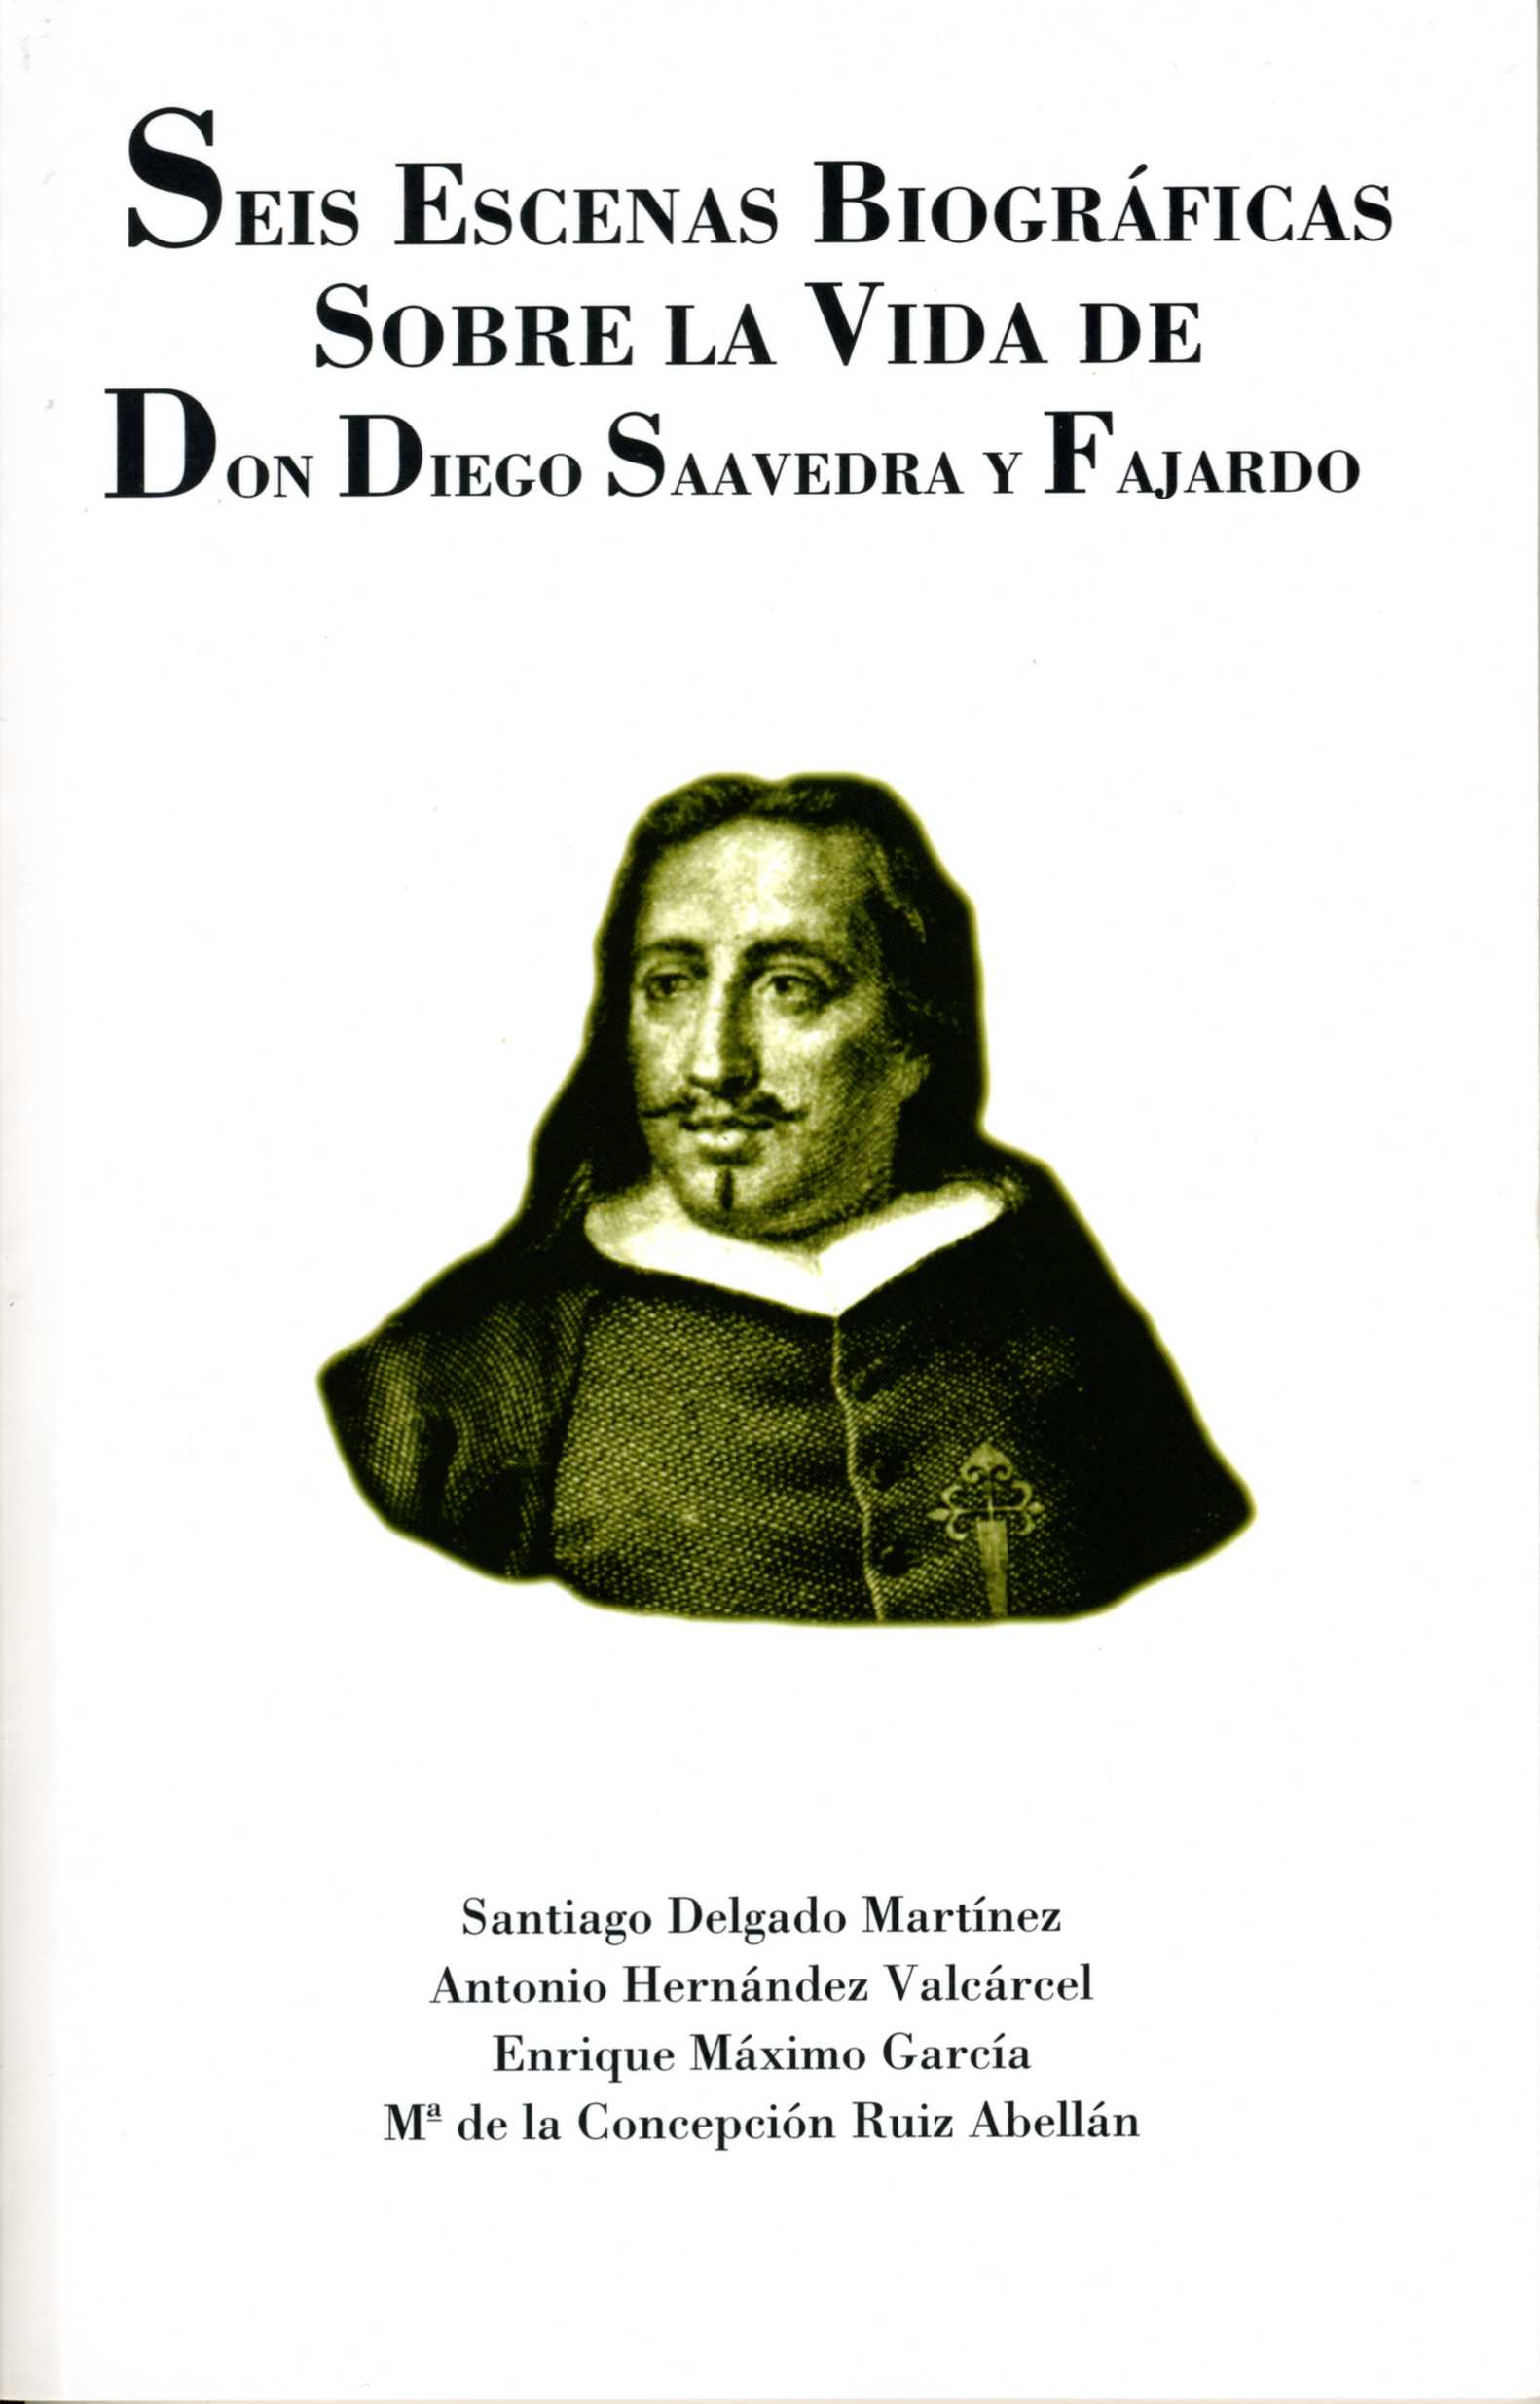 Portada de "Seis escenas biográficas sobre la vida de Don Diego Saavedra y Fajardo"